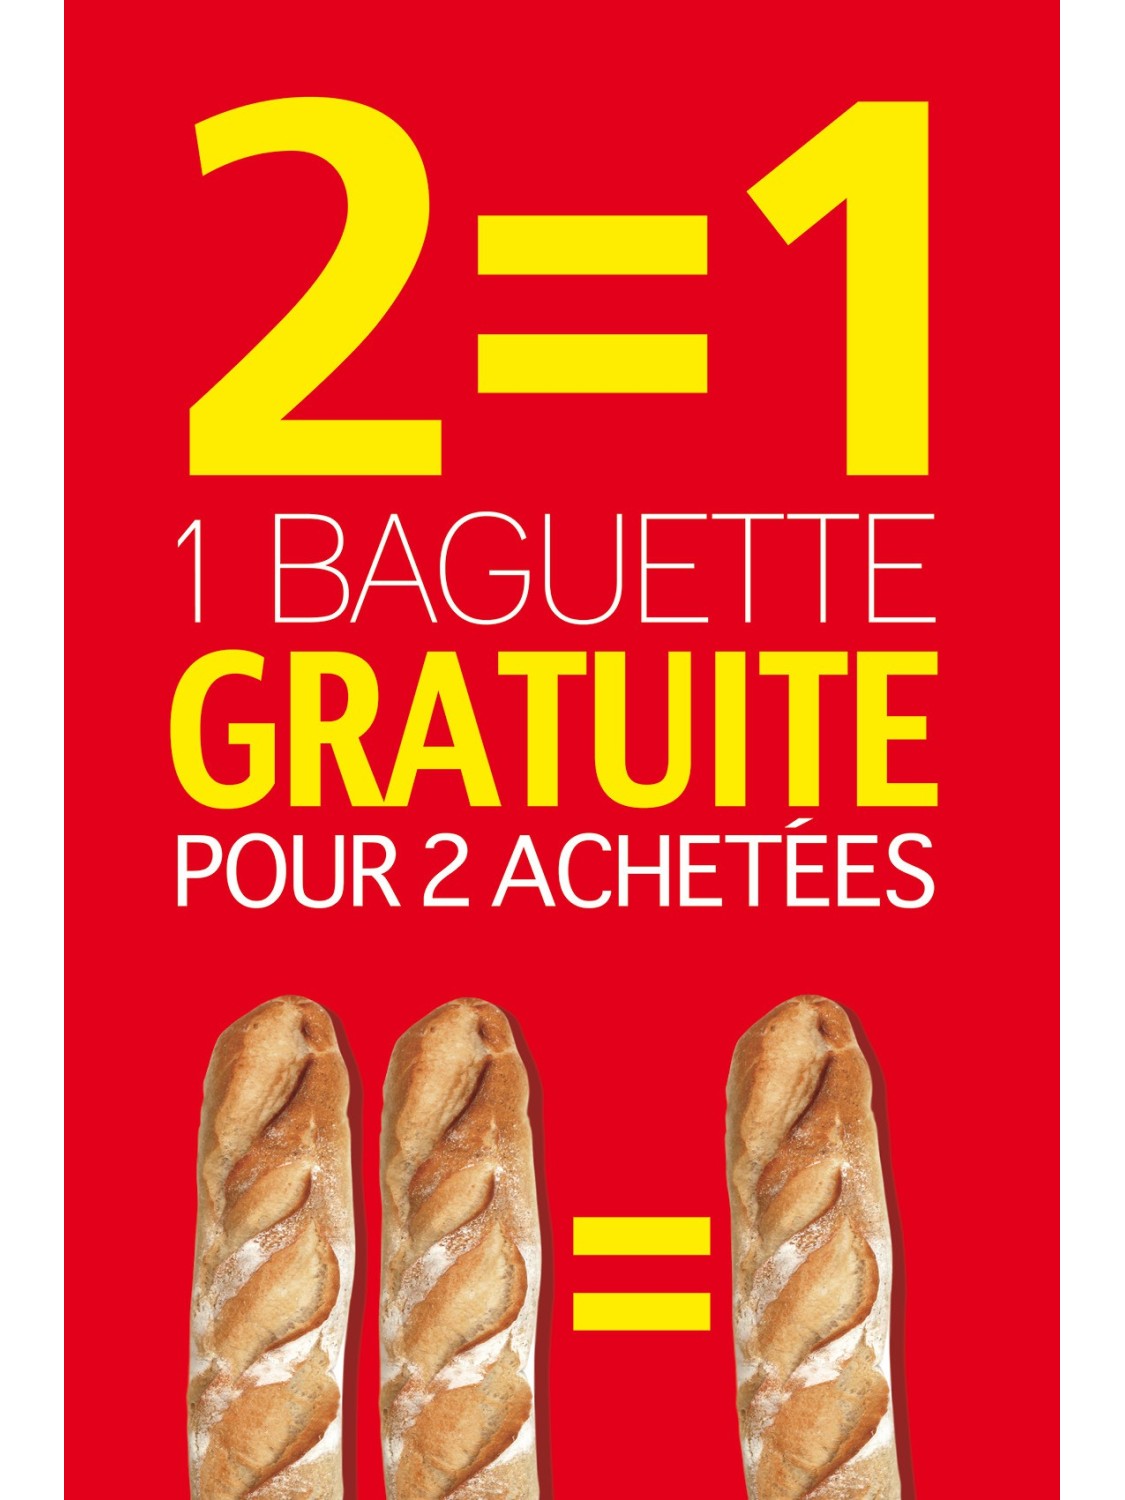 Affiche Boulangerie "2 égal 1 gratuite pour 2 achetées"